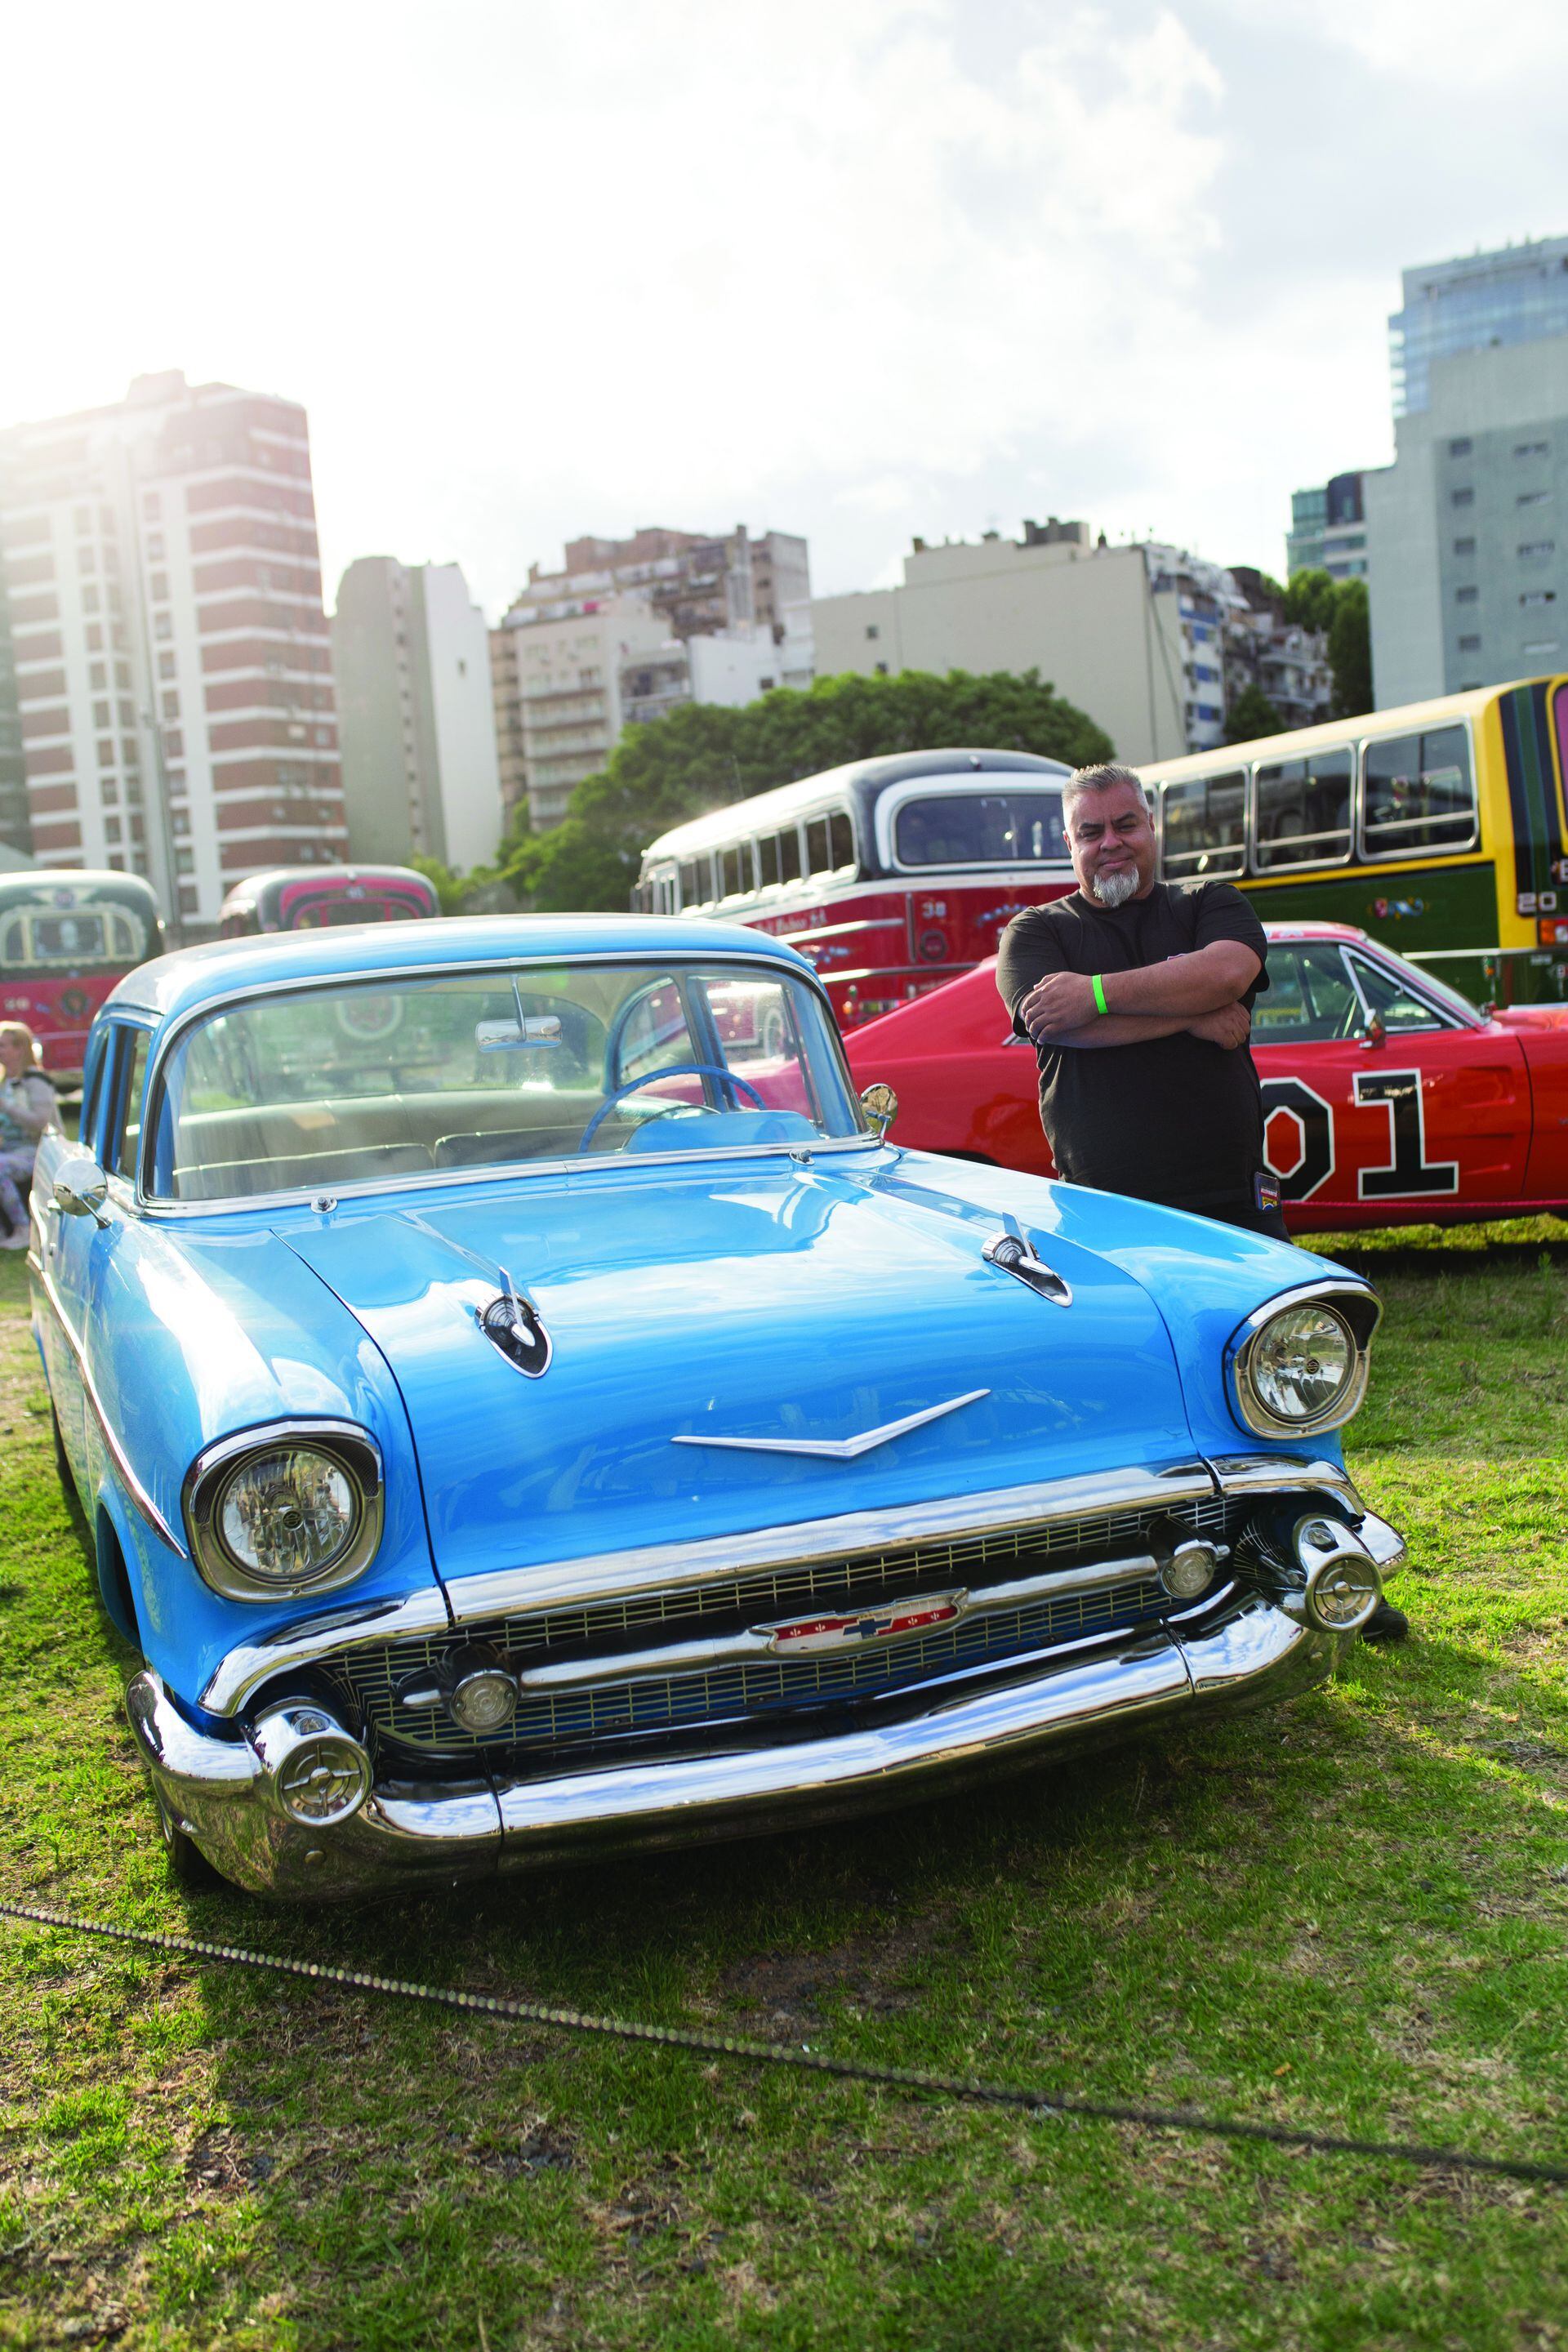 Daniel (44) Es de Lanús. ¿Qué auto tenés? “Chevrolet Bel Air 1957. Me encantan las líneas de la década del 50”.